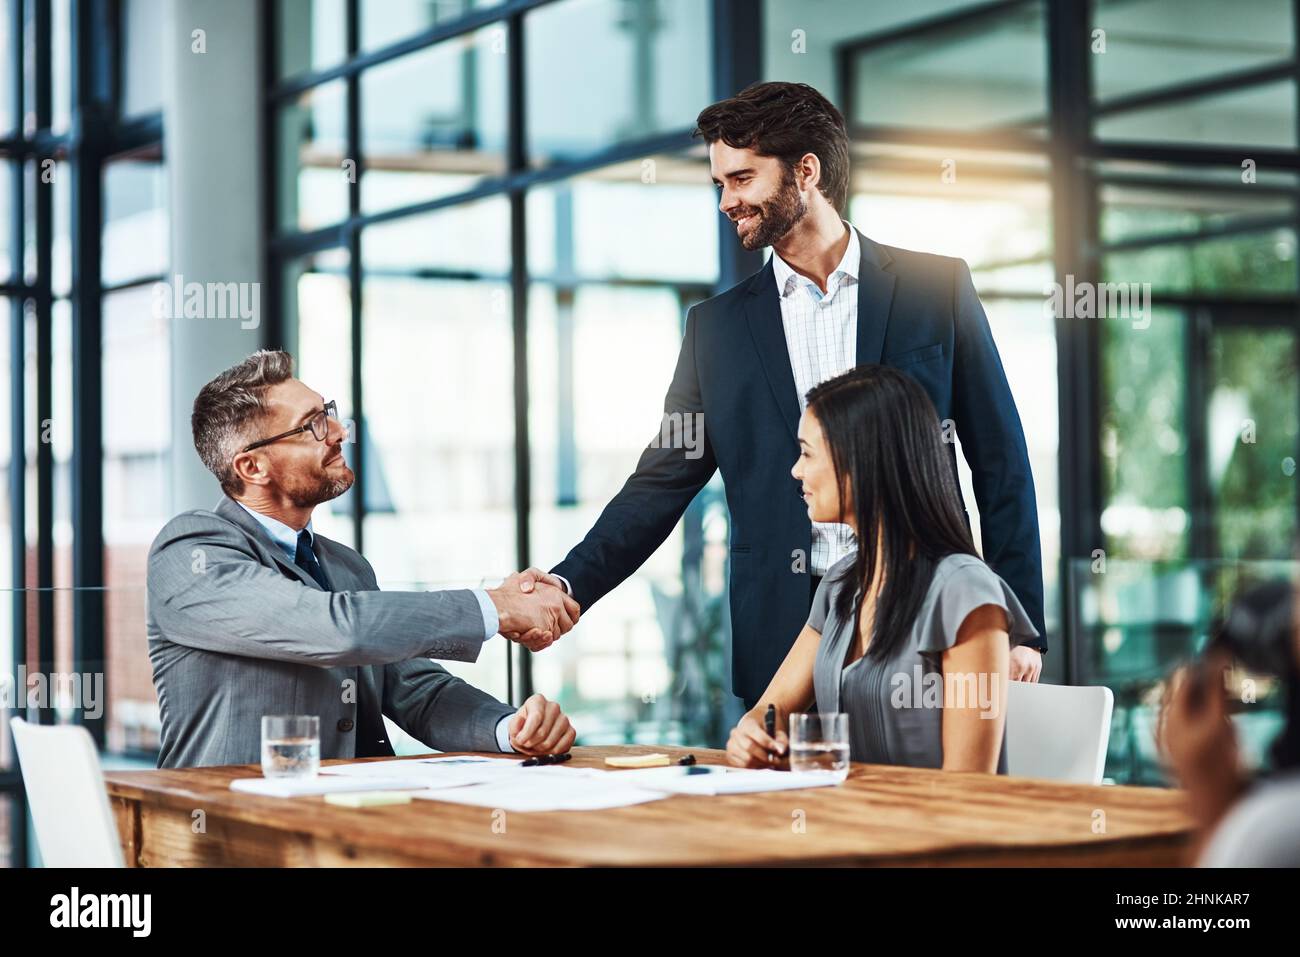 Nous nous réjouissons de vous avoir avec nous. Coup de main d'hommes d'affaires en train de se serrer la main lors d'une réunion dans un bureau moderne. Banque D'Images